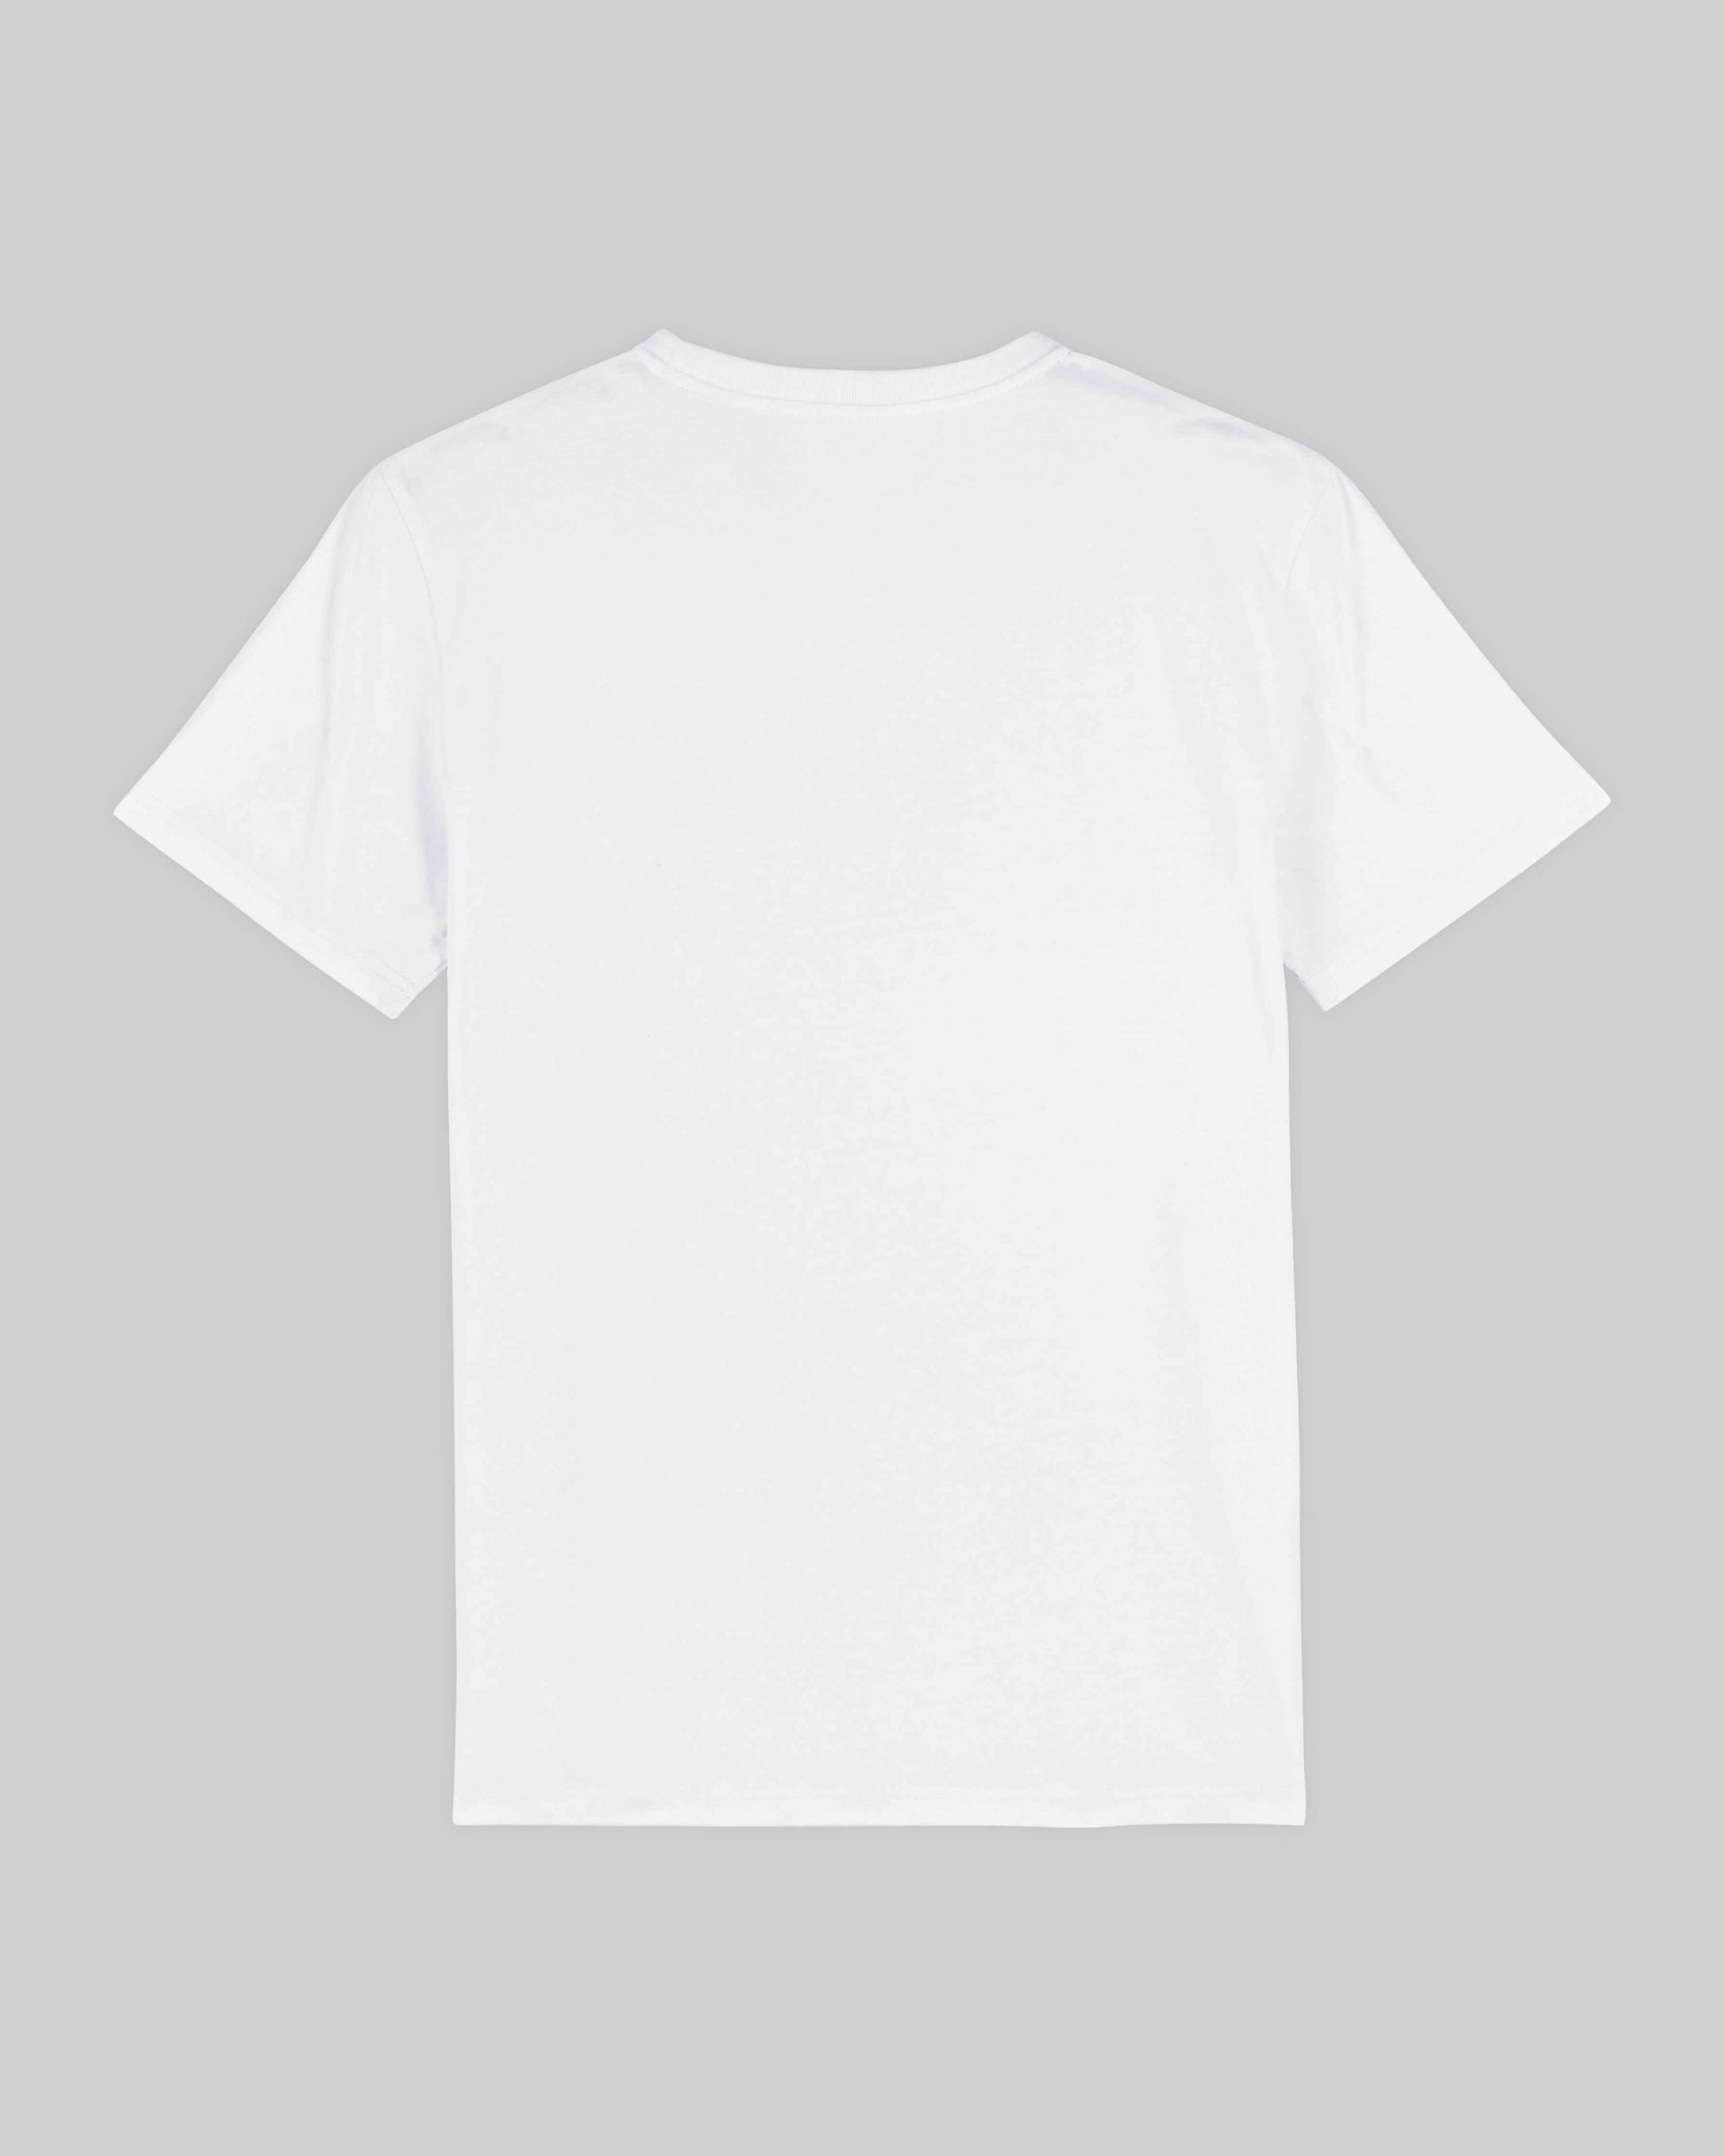 EINHORST® unisex Organic Shirt in Weiß mit dem Motiv "lgbtq+ Regenbogen" in der Kombination schwarzer Regenbogen mit schwarzer Schrift, Bild von Shirt von hinten